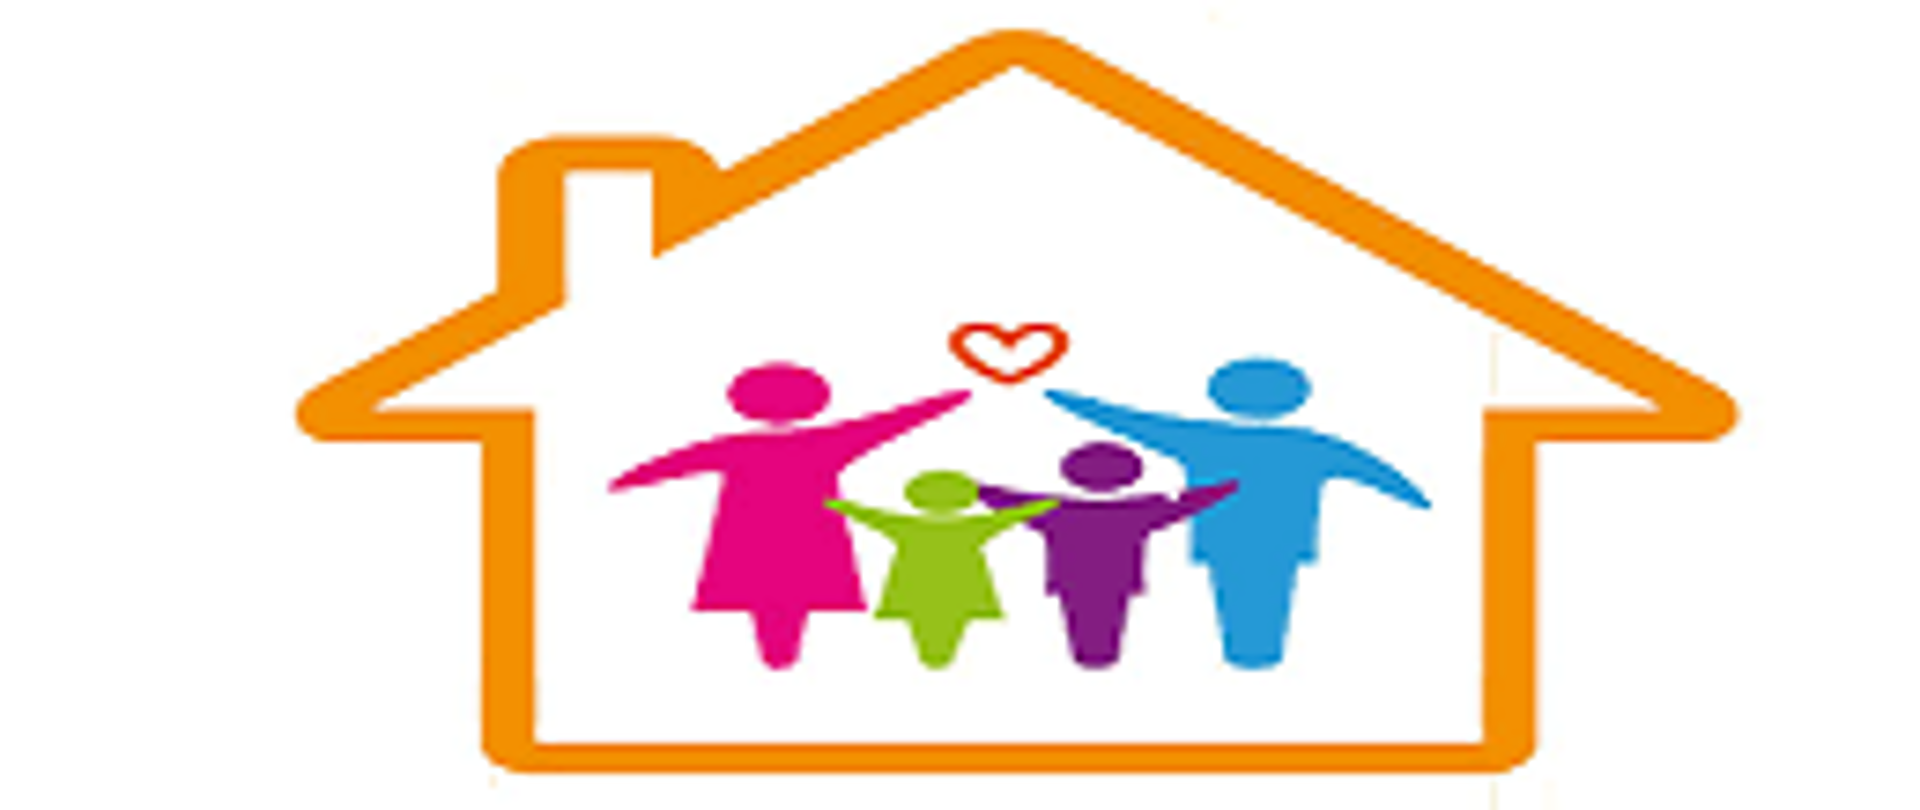 grafika przedstawiająca czteroosobową rodzinę - stojące z uniesionymi rękami sylwetki rodziców i dzieci, nad nimi serce, całość znajduje się wewnątrz szablonu domku 